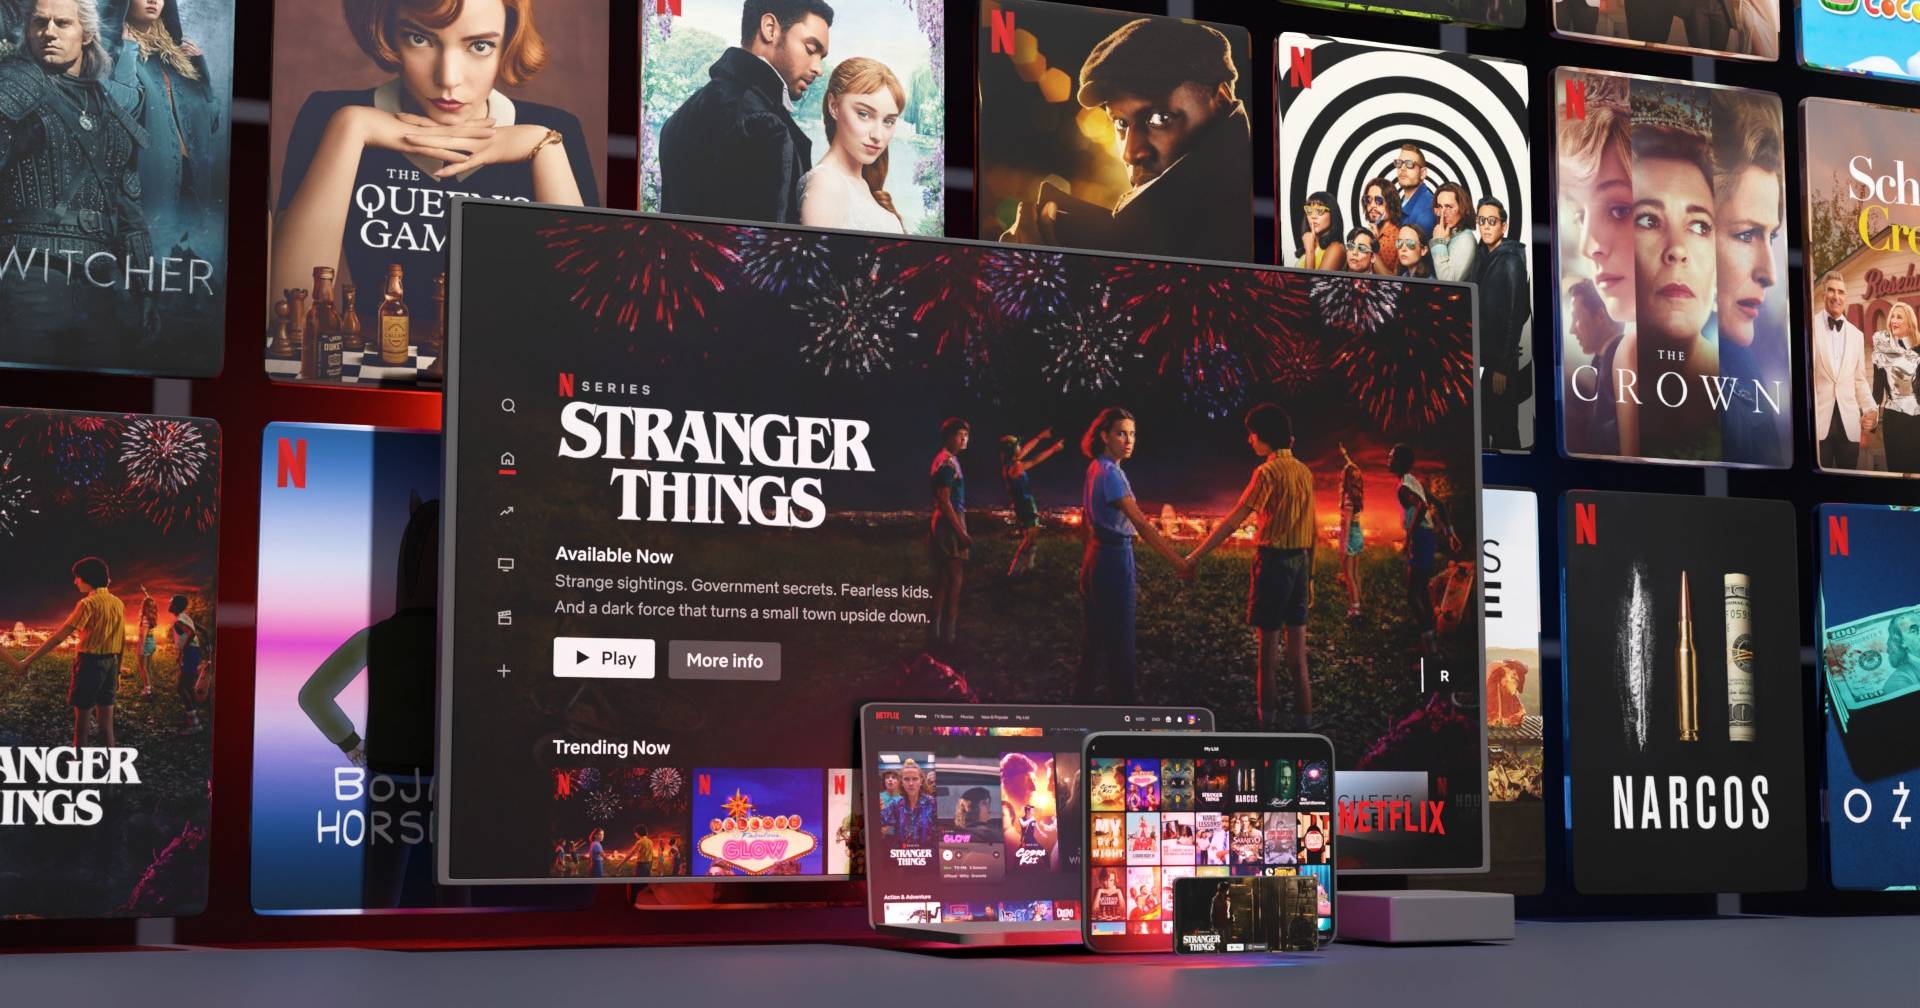 20 serviços de streaming diferentes para quem cansou das séries da Netflix